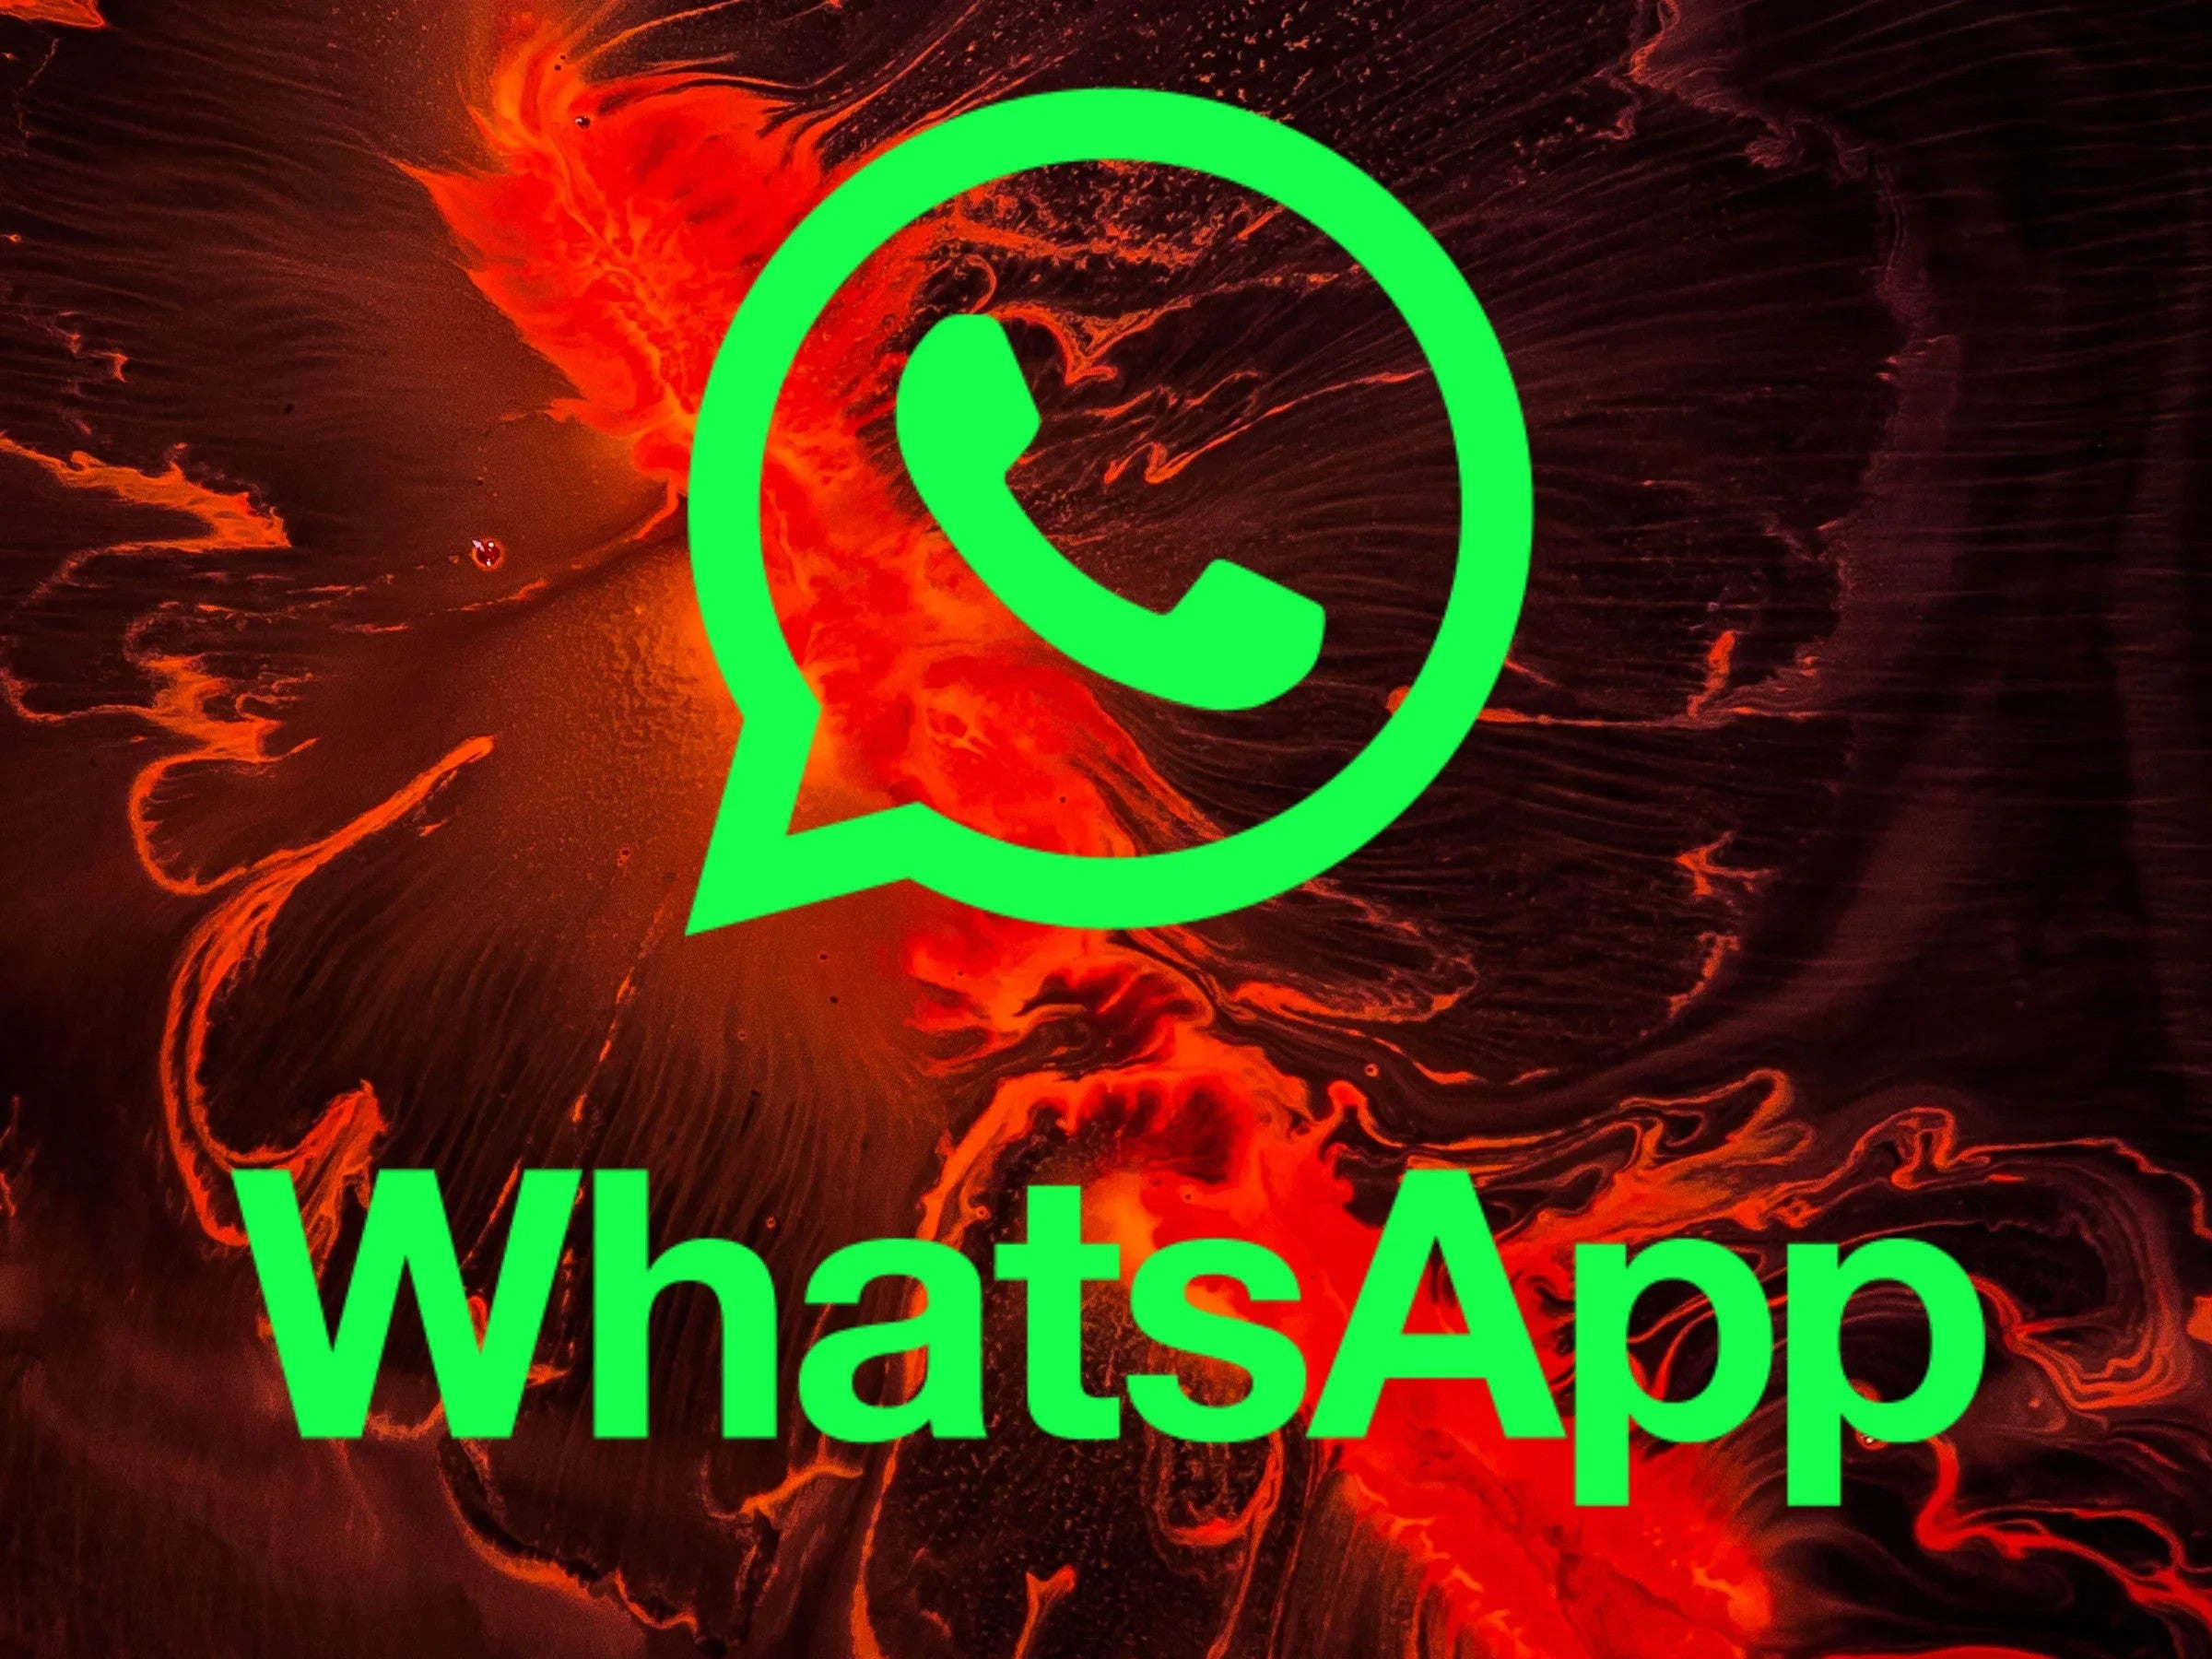 #WhatsApp: Achtung! Wer dieses verlockende Angebot annimmt, macht sich strafbar